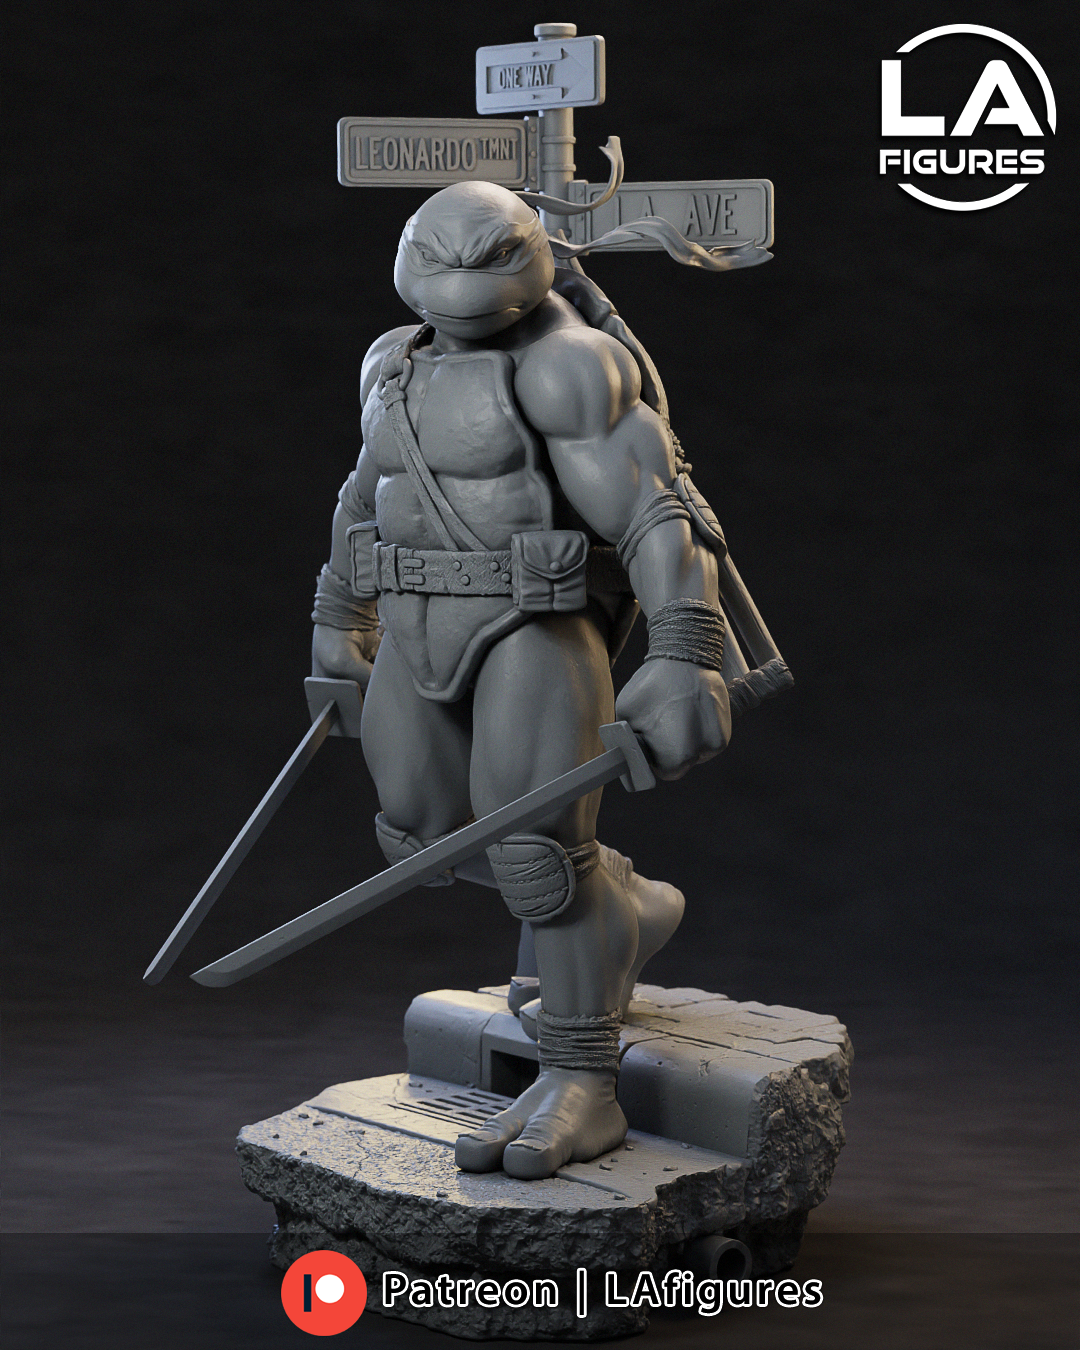 Leonardo (TMNT) Statue - Fan Art 10 Scale (210mm) 3D Print Kit